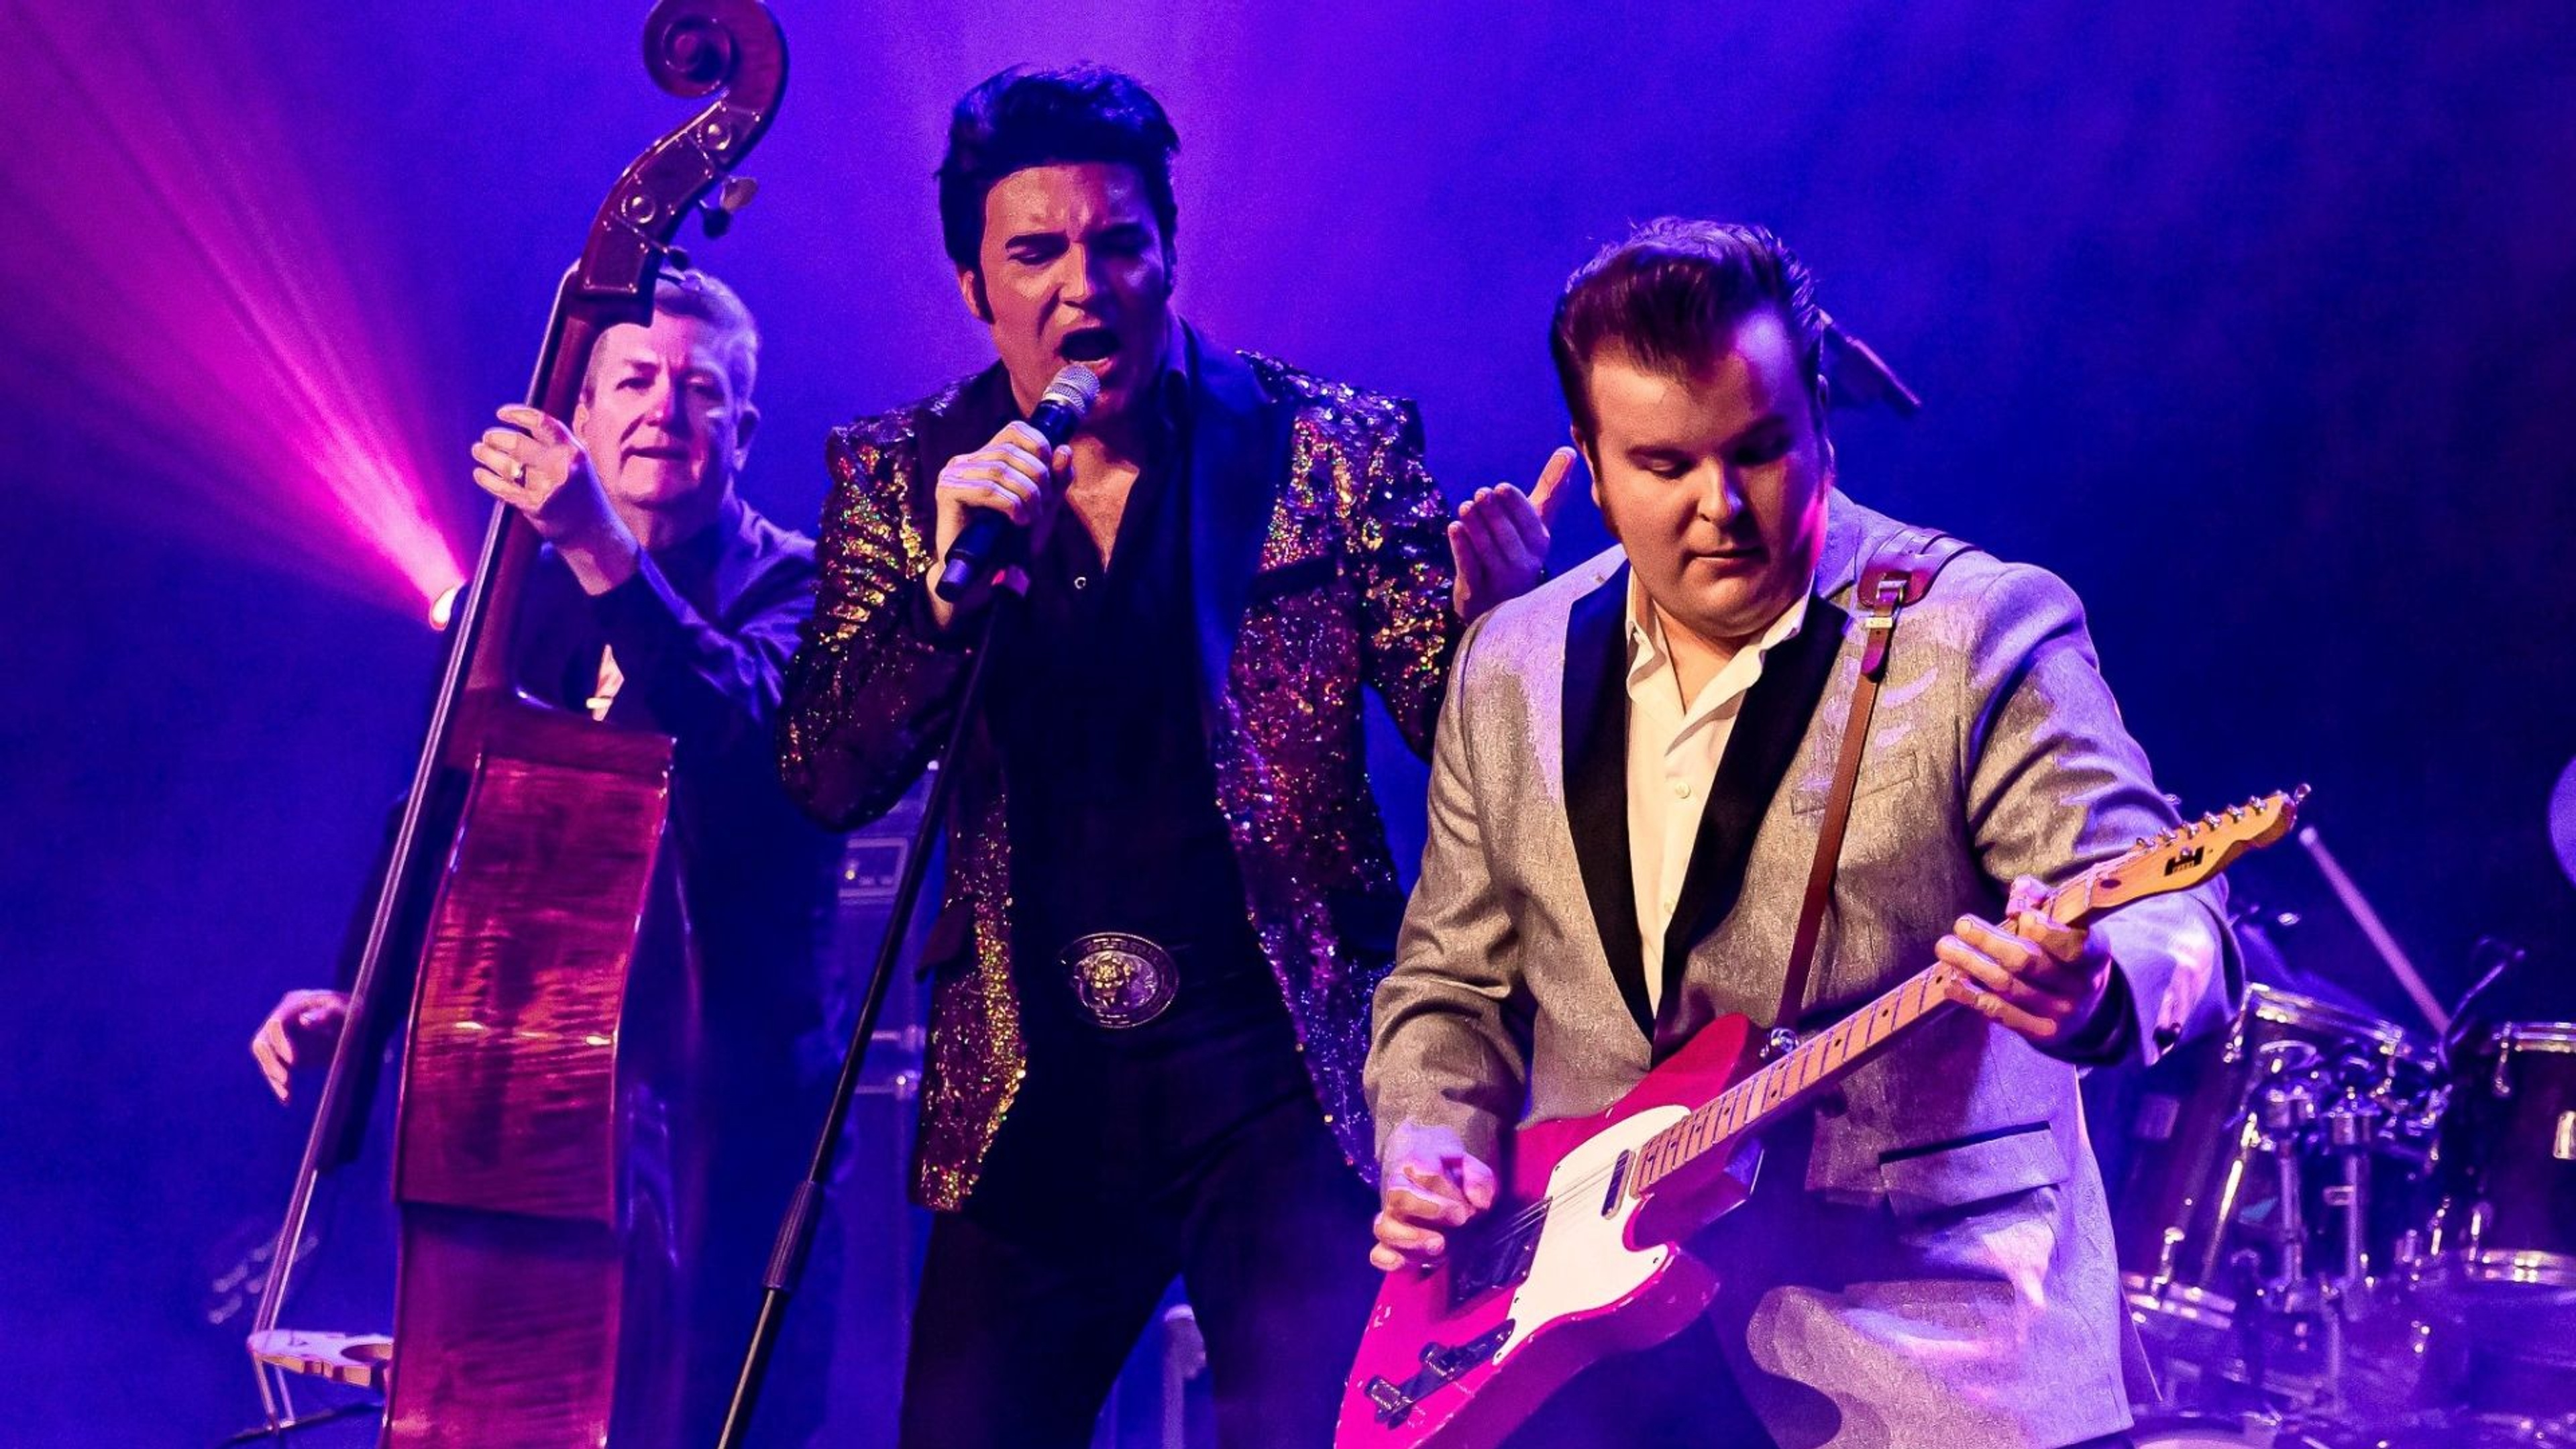 Dwight Icenhower som Elvis står i mitten och sjunger i mikrofon. Till vänster spelar en man kontrabas och till höger spelar en man elgitarr.